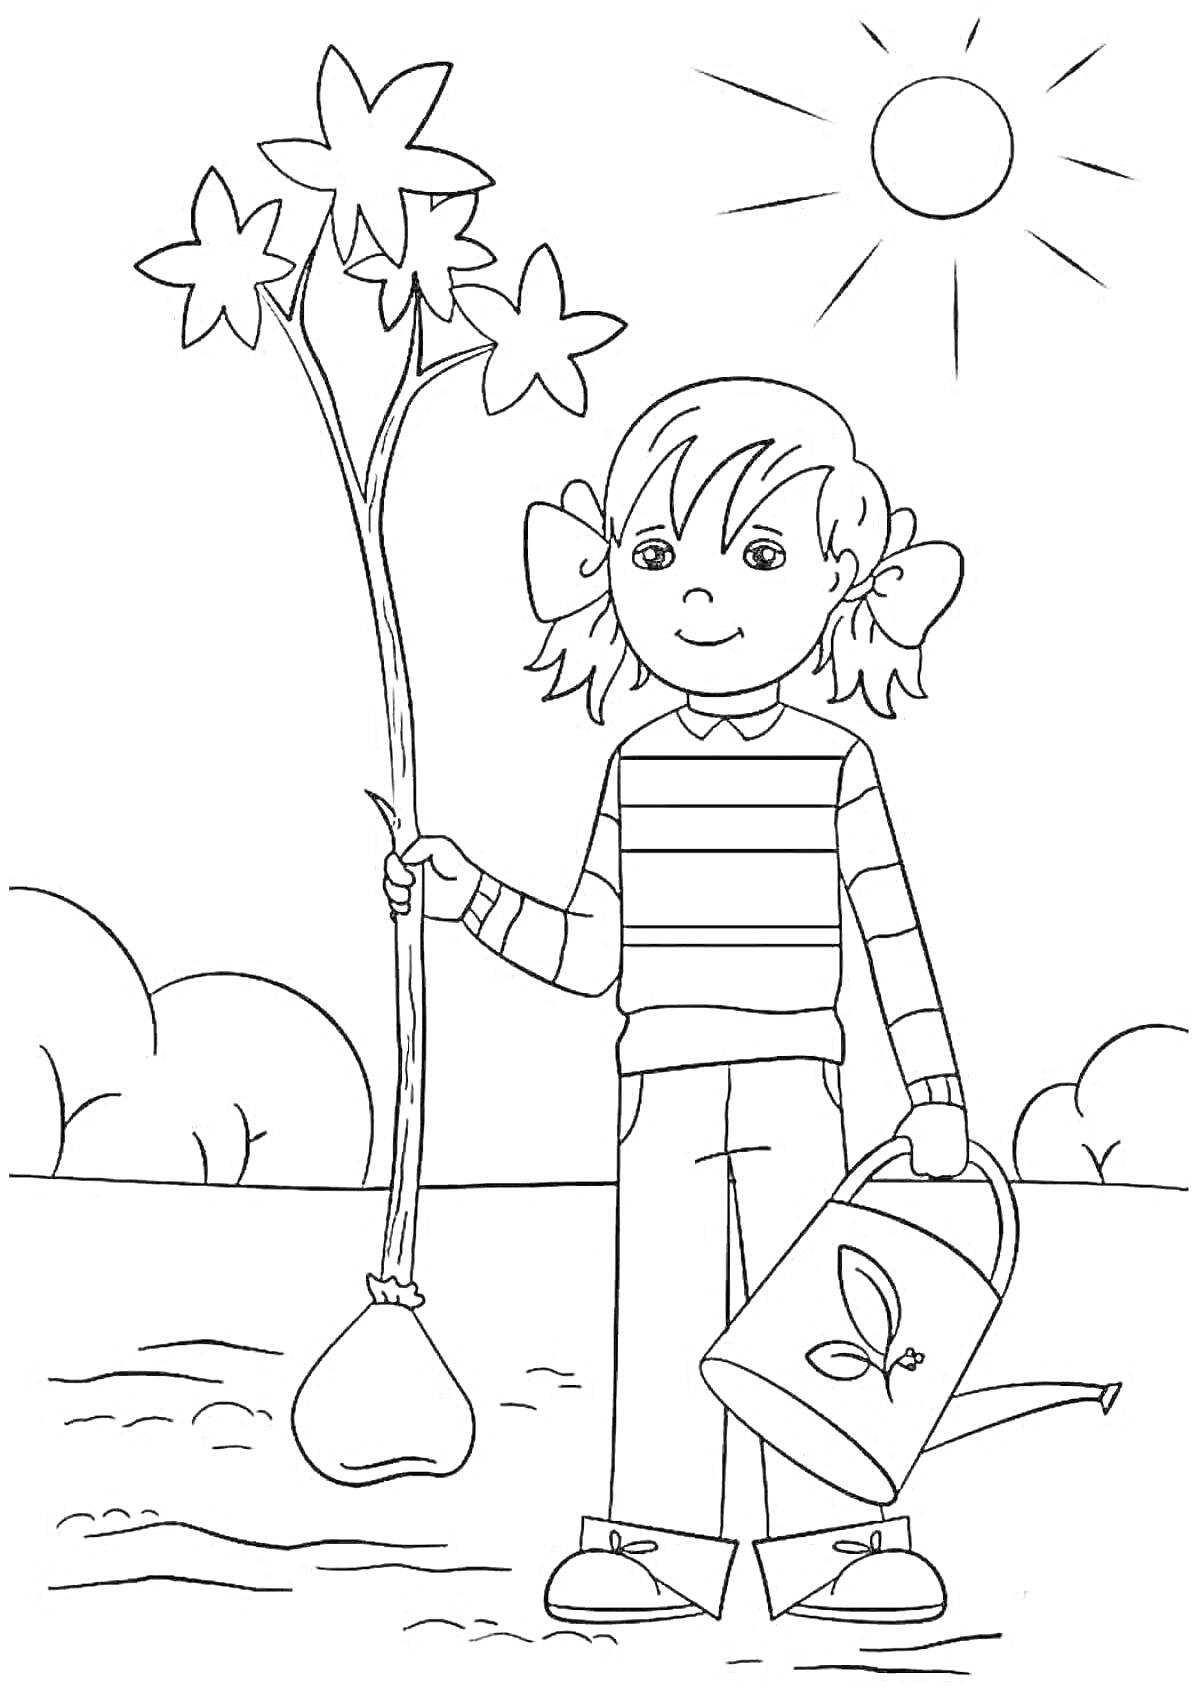 Раскраска Ребёнок сажает дерево под солнечным небом